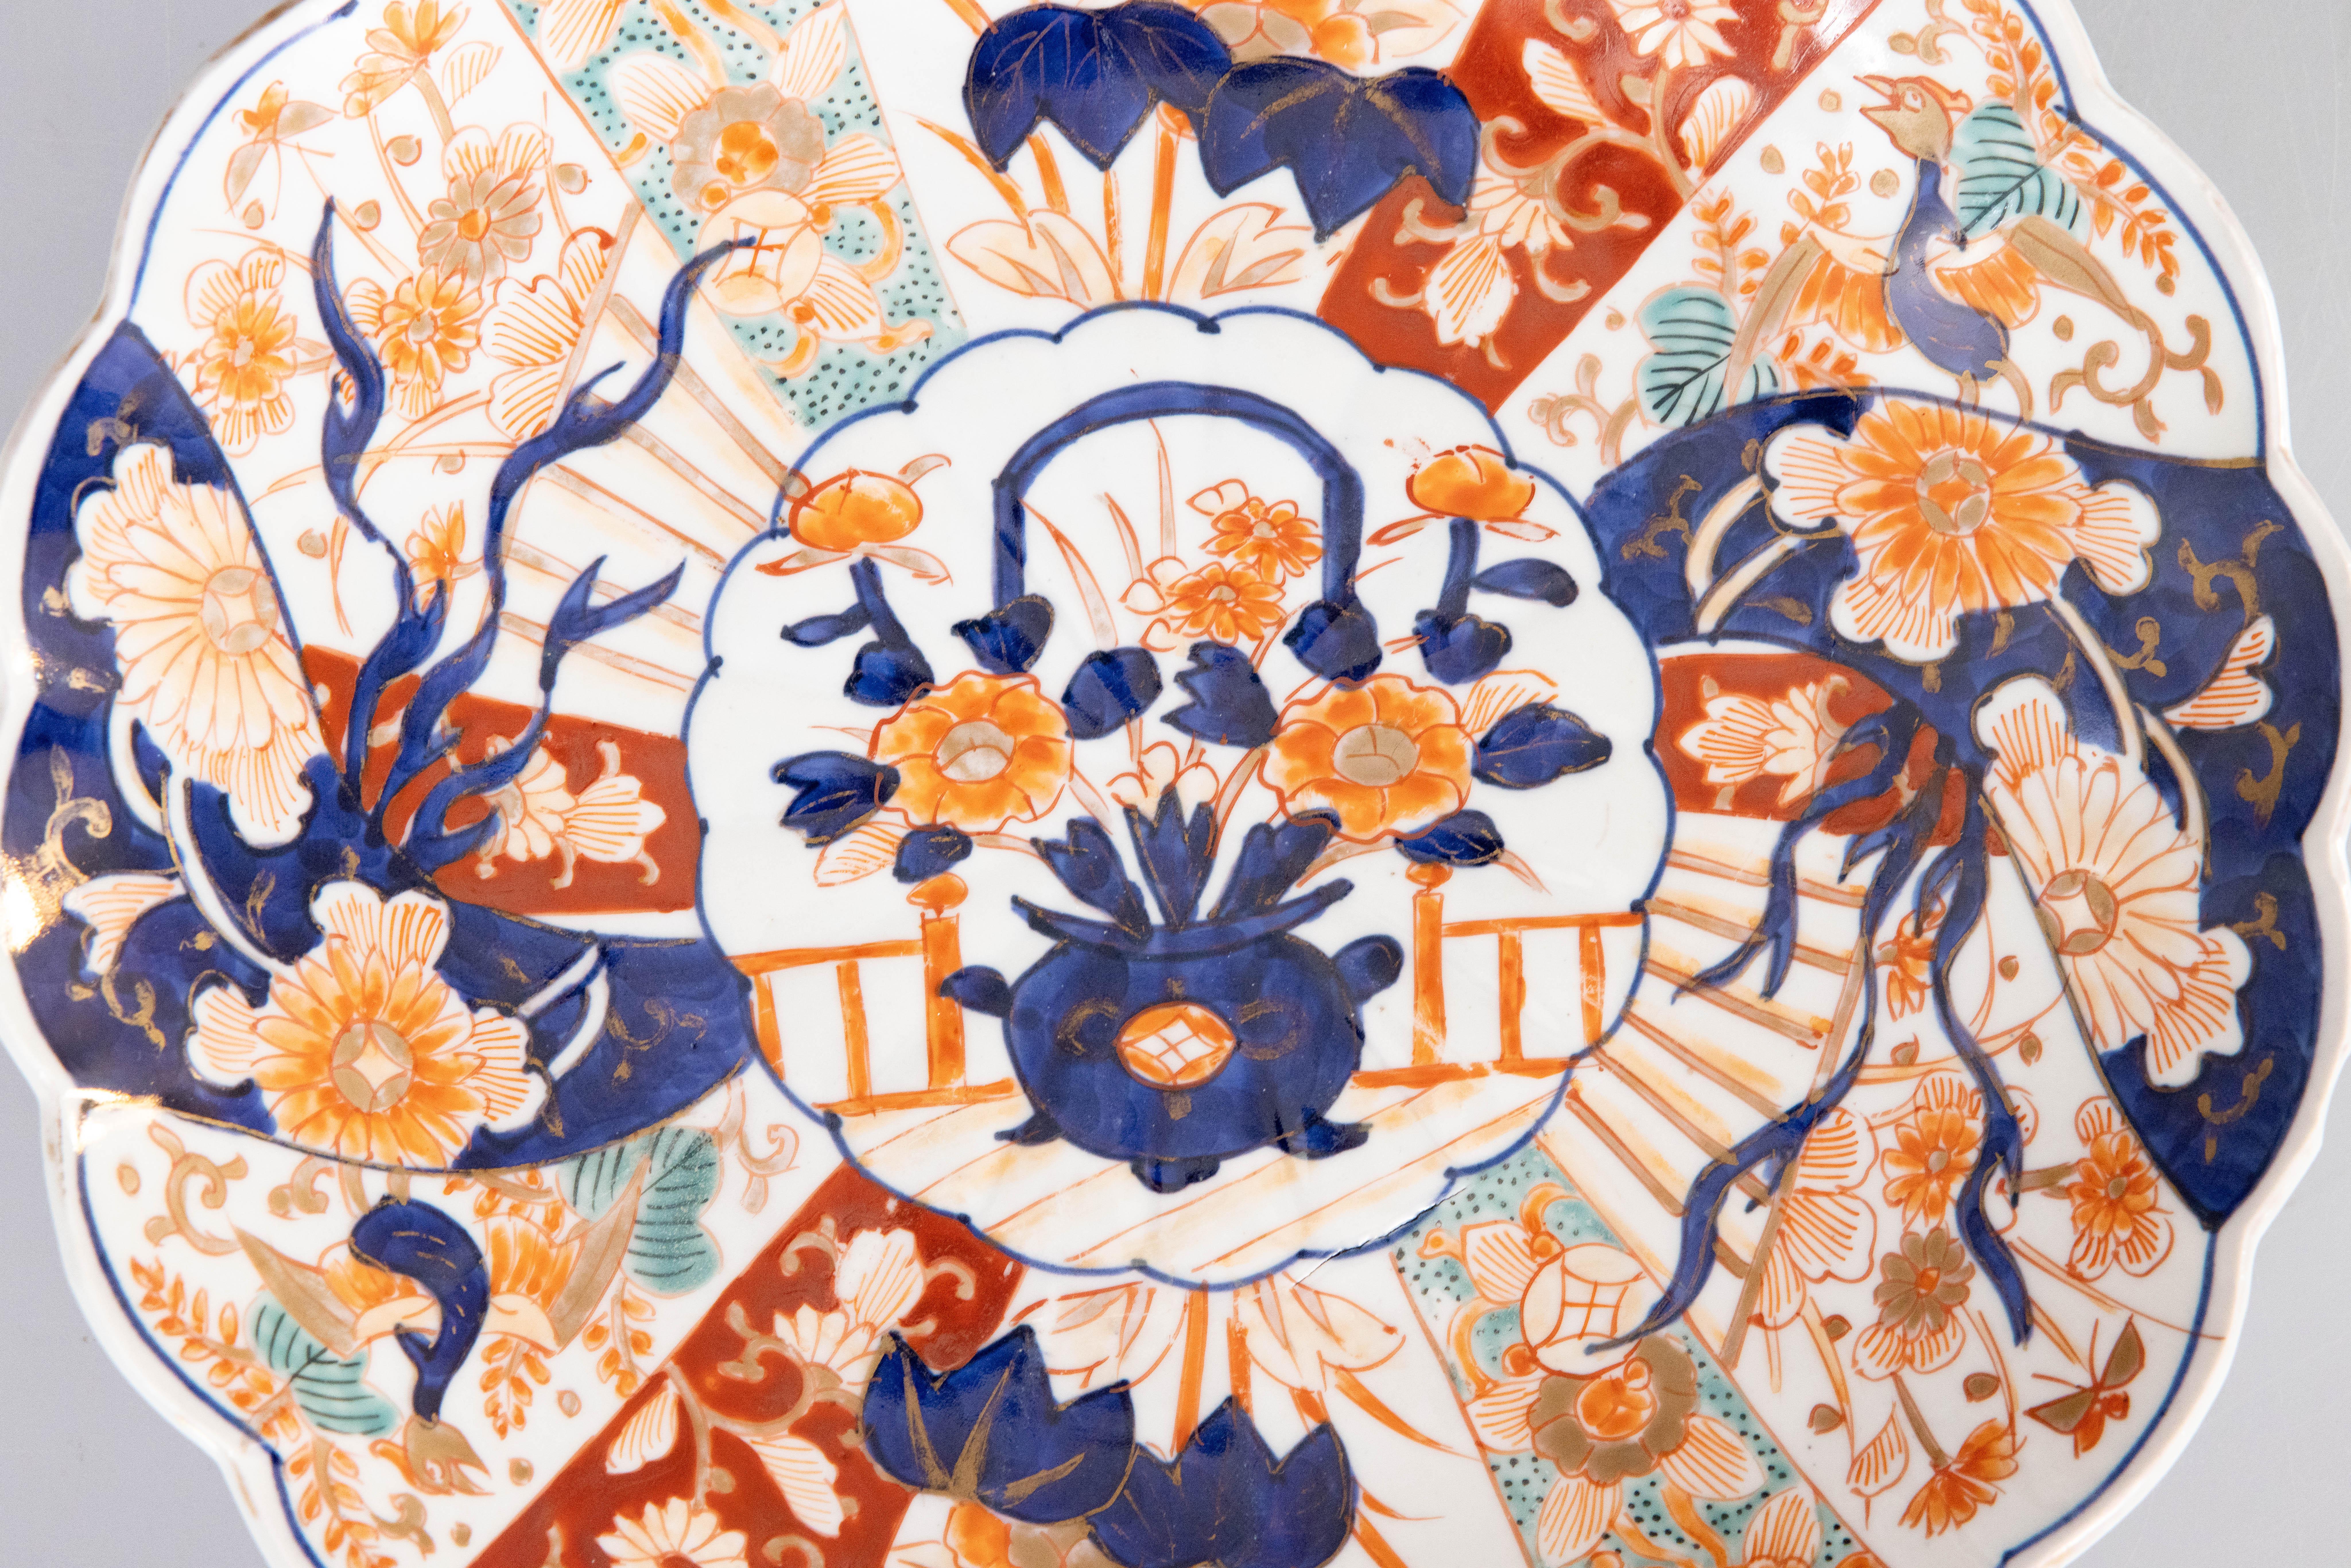 Ein wunderschönes japanisches Imari-Porzellan-Ladegerät aus der Meiji-Periode des 19. Jahrhunderts mit einem handgemalten Blumenmuster in den traditionellen Imari-Farben und atemberaubenden türkisfarbenen Akzenten. Dieser feine, große Teller hat